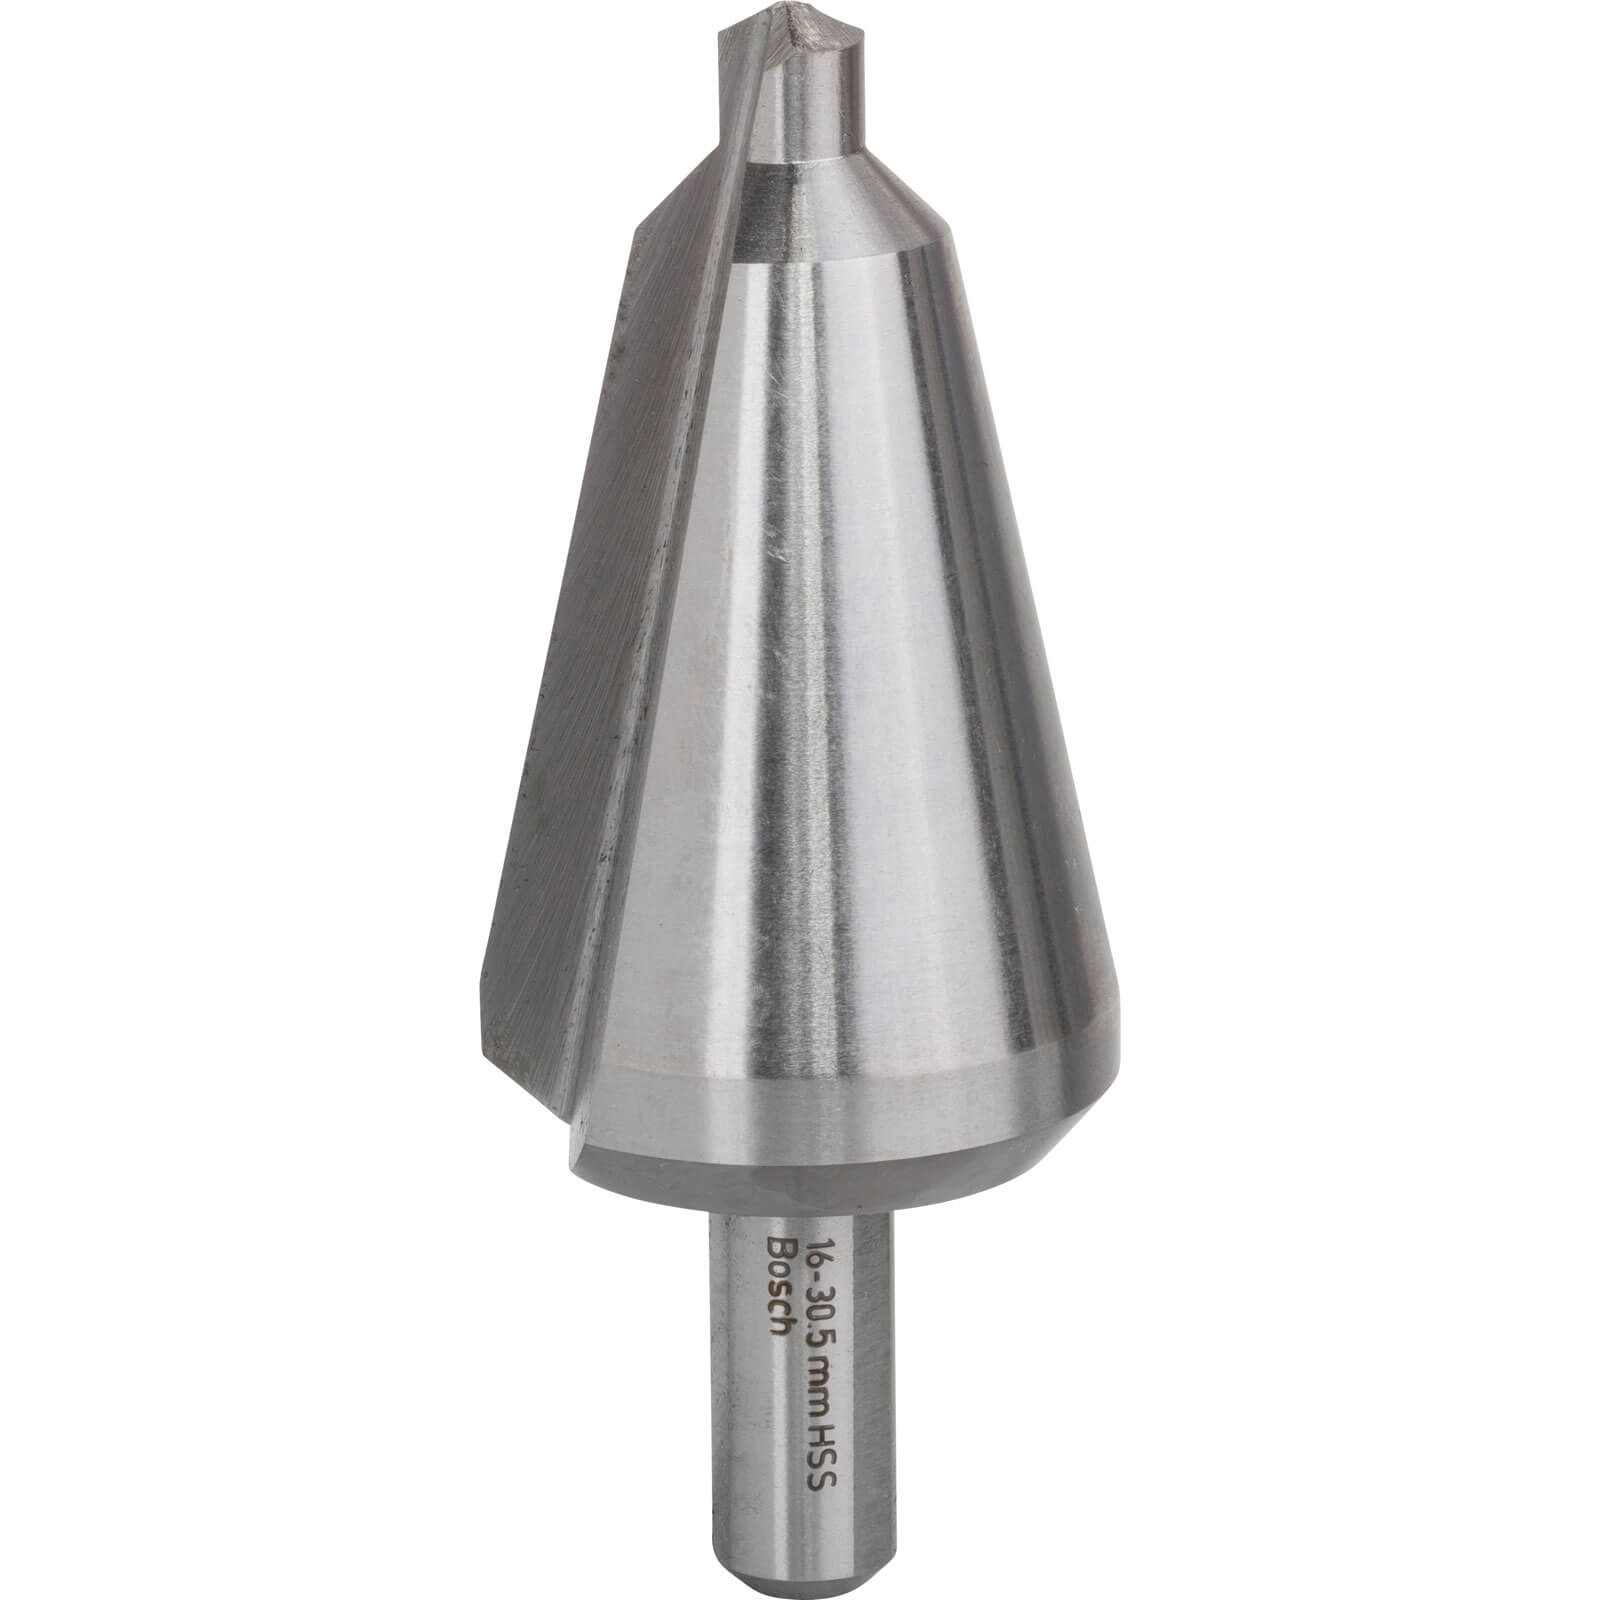 Image of Bosch HSS Sheet Metal Cone Cutter Drill Bit 6mm - 30.5mm